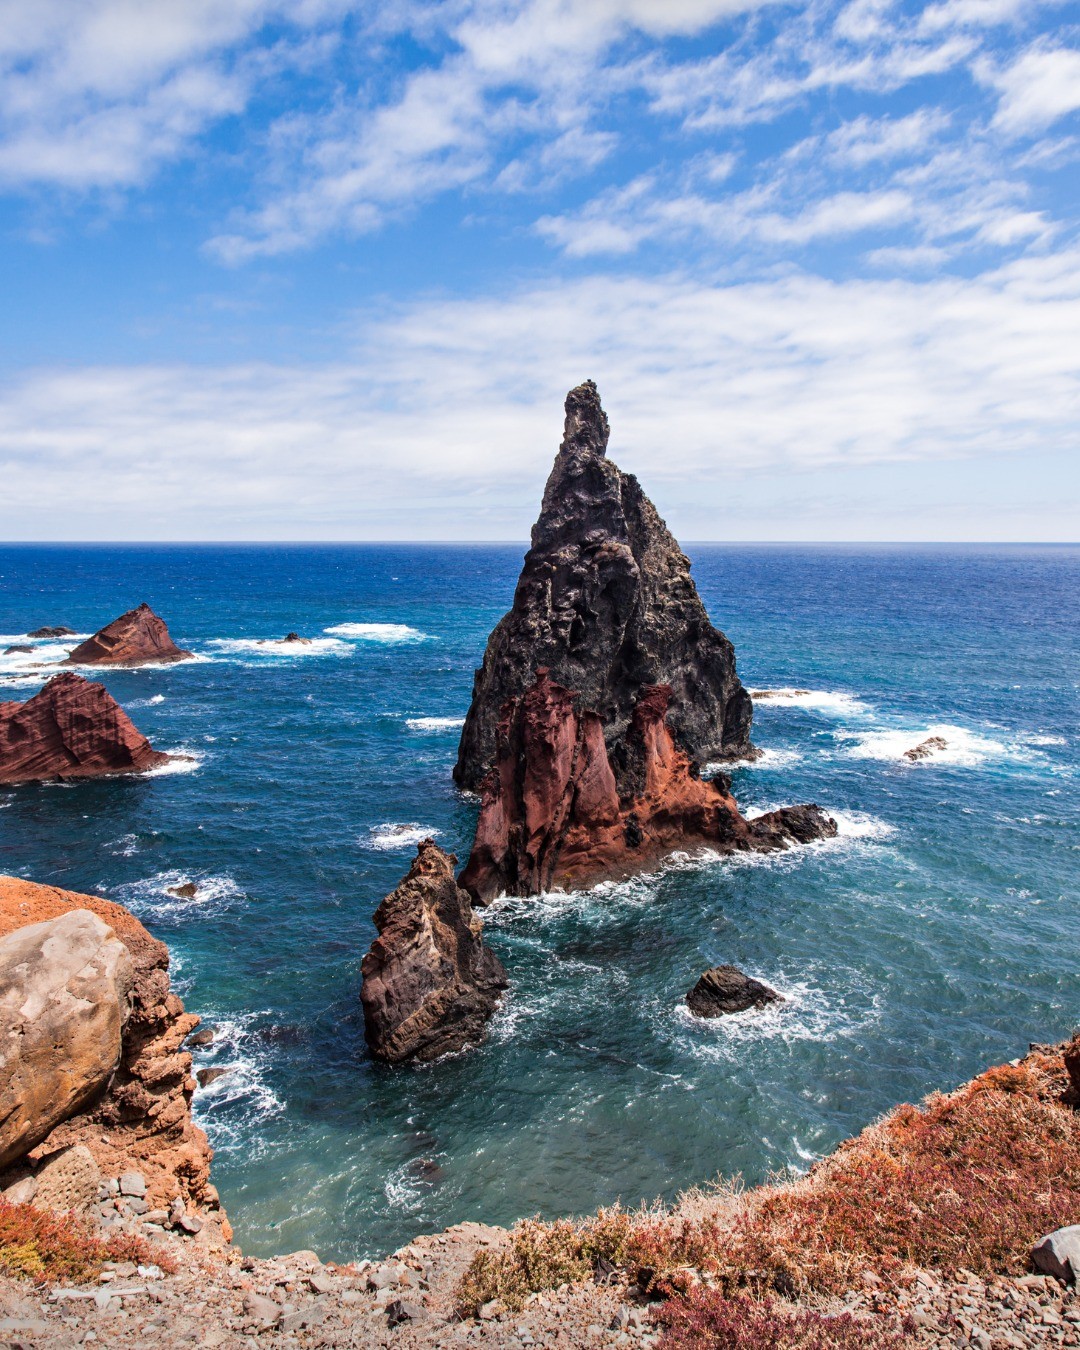 ⛰✨ Madeira egy gyönyörű és lenyűgöző sziget, amely szebbnél szebb fotózási célpontokat rejt. Már alig várjuk, hogy meghódítsuk a fotós csapatunkkal a szigetet. 🤩

Ha szeretnél velünk tartani a 2023-as fotótúránkra, akkor jelentkezz minél előbb, mert a létszám LIMITÁLT! 👇
Link a BIO-ban!
.
.
.
.
#bestphototour #fototura #fotostura #photographytour
#photographer #quotes #utazzvelunk #fotozzvelunk
#travelphotography #magyarfotosok #magyarfotoklub
#landscapephotography #iceland #izlandifotók
#icelandphotography #worldsbestplaces #utazossztorik
#fotossztorik #MADEIRA #PORTUGAL